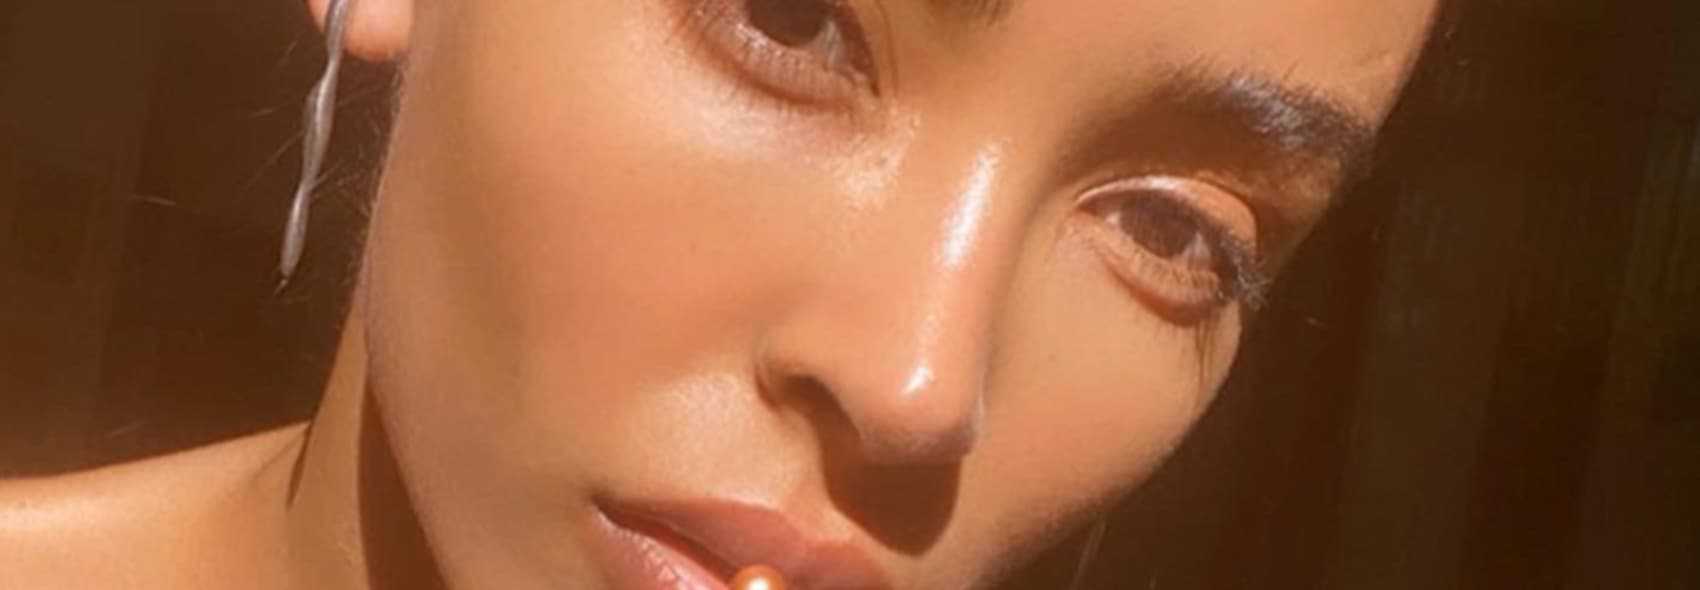 Woman face - close-up